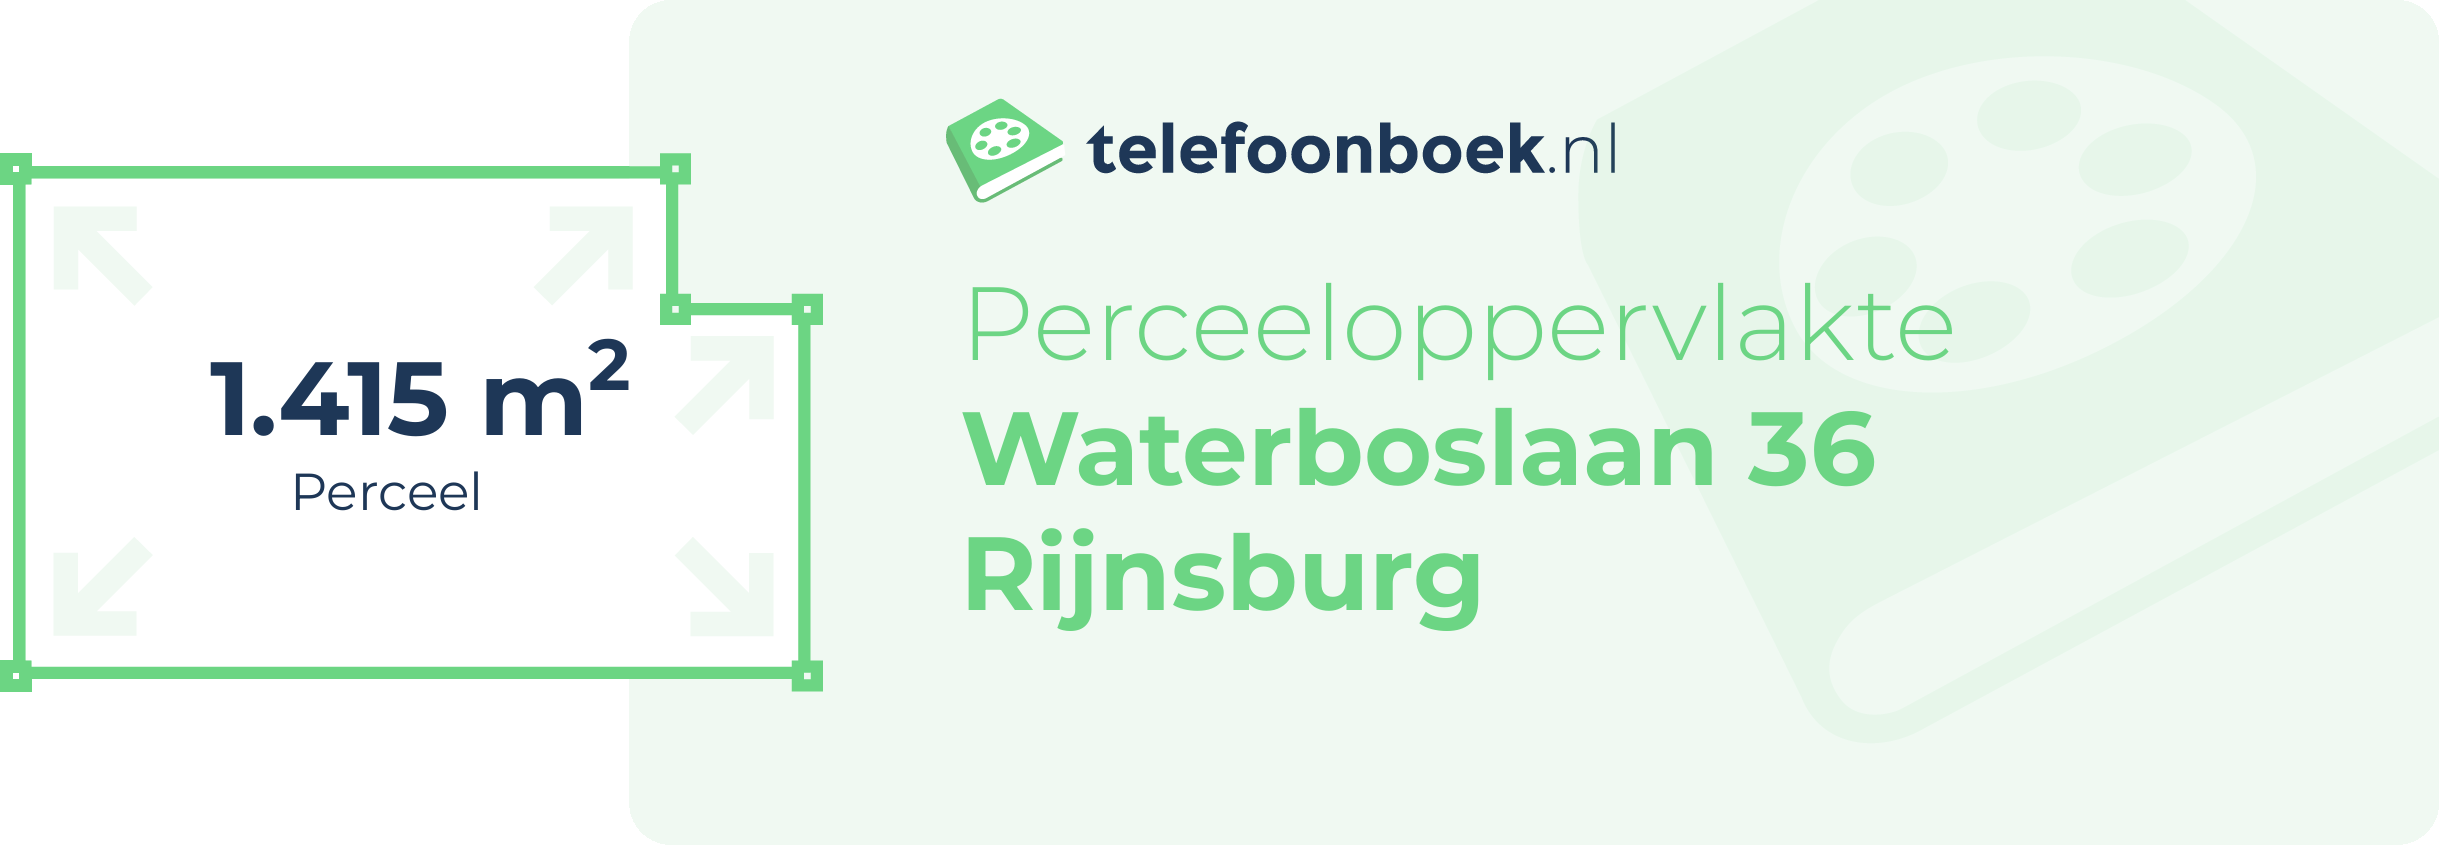 Perceeloppervlakte Waterboslaan 36 Rijnsburg